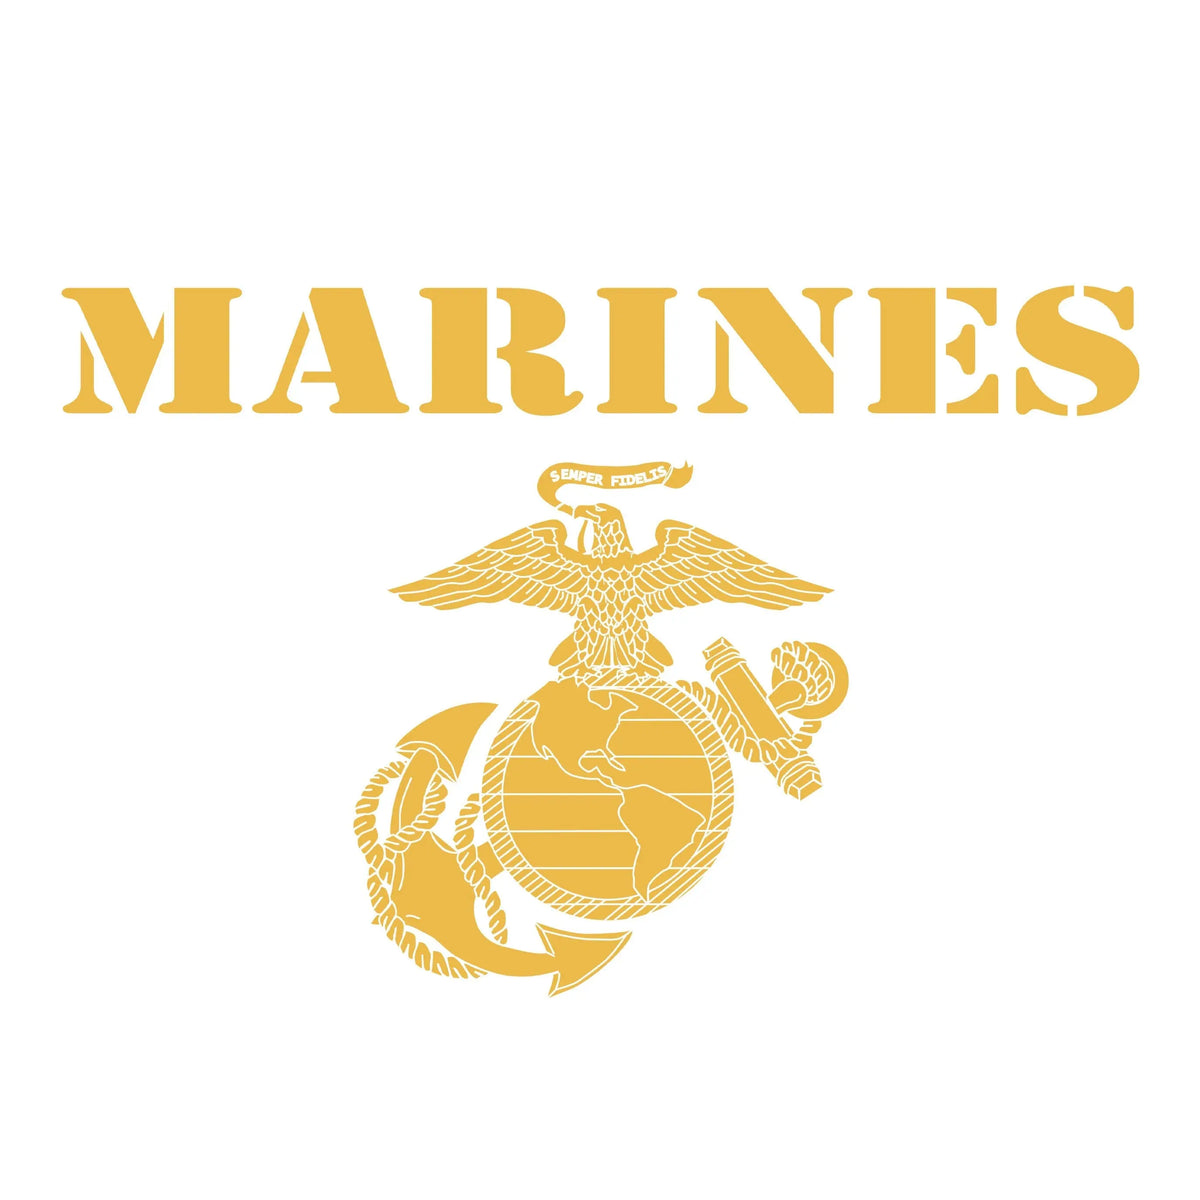 Red & Gold Vintage Marines Tee